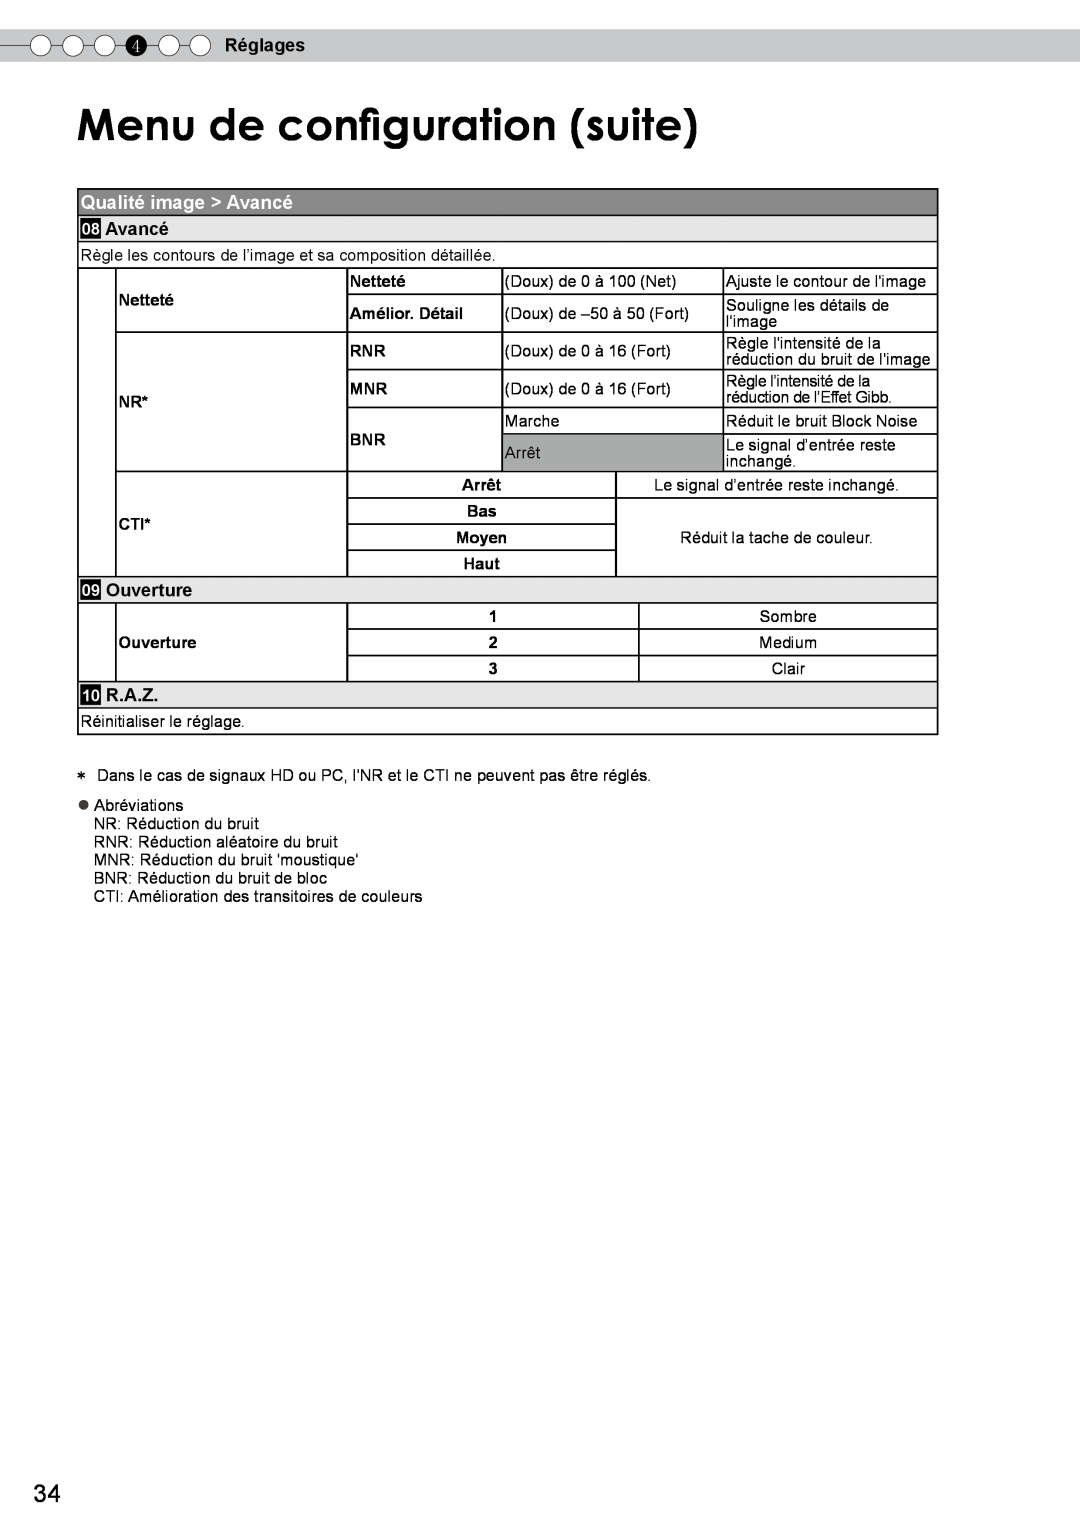 JVC DLA-RS10 manual Menu de configuration suite, Qualité image Avancé, 4 Réglages, Ouverture, 10 R.A.Z 